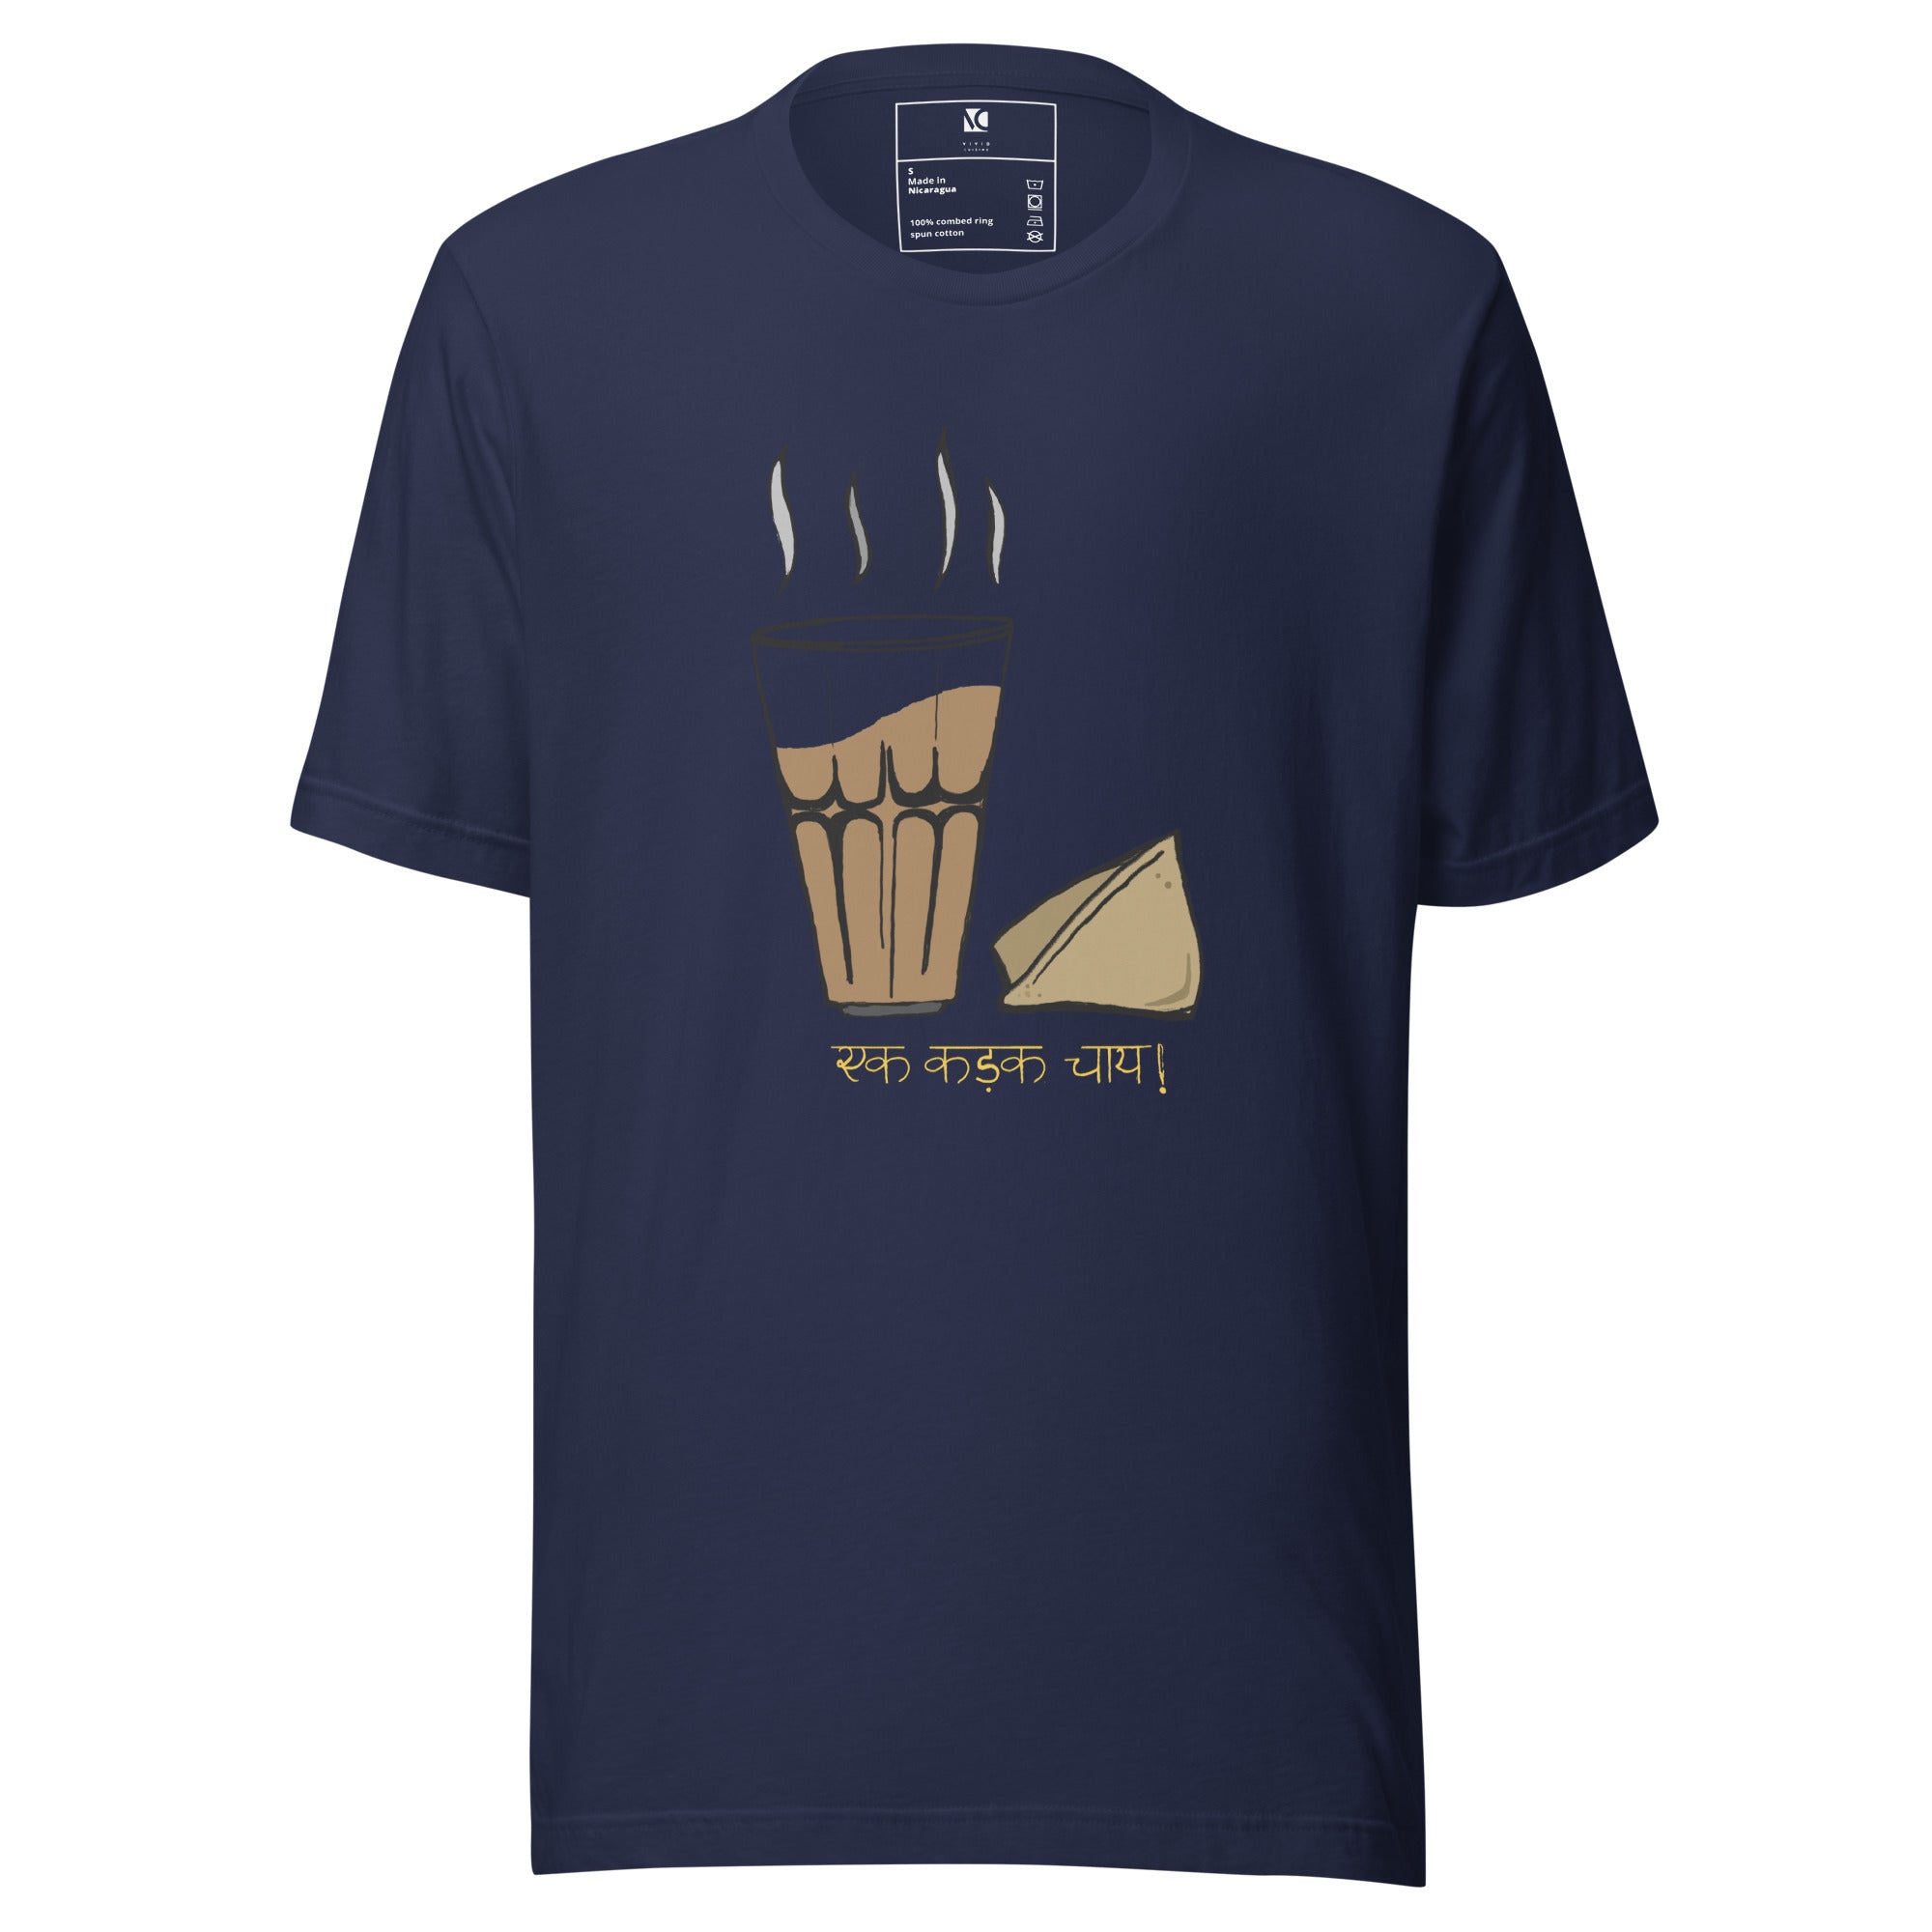 Chai aur Samosa - Unisex T-Shirt